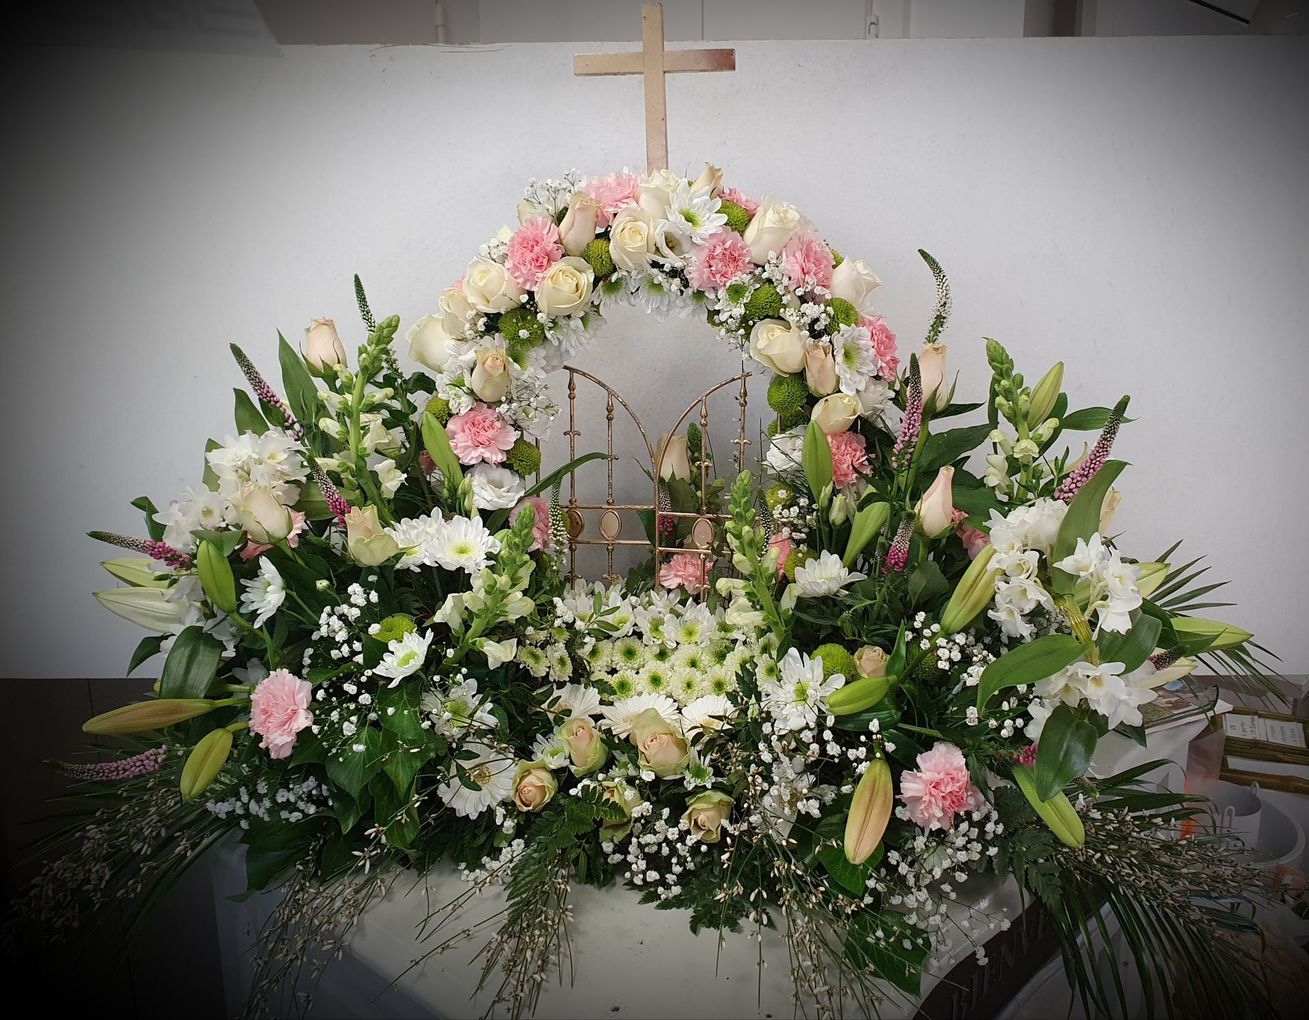 Courronne de fleurs et compositions florales pour enterrement